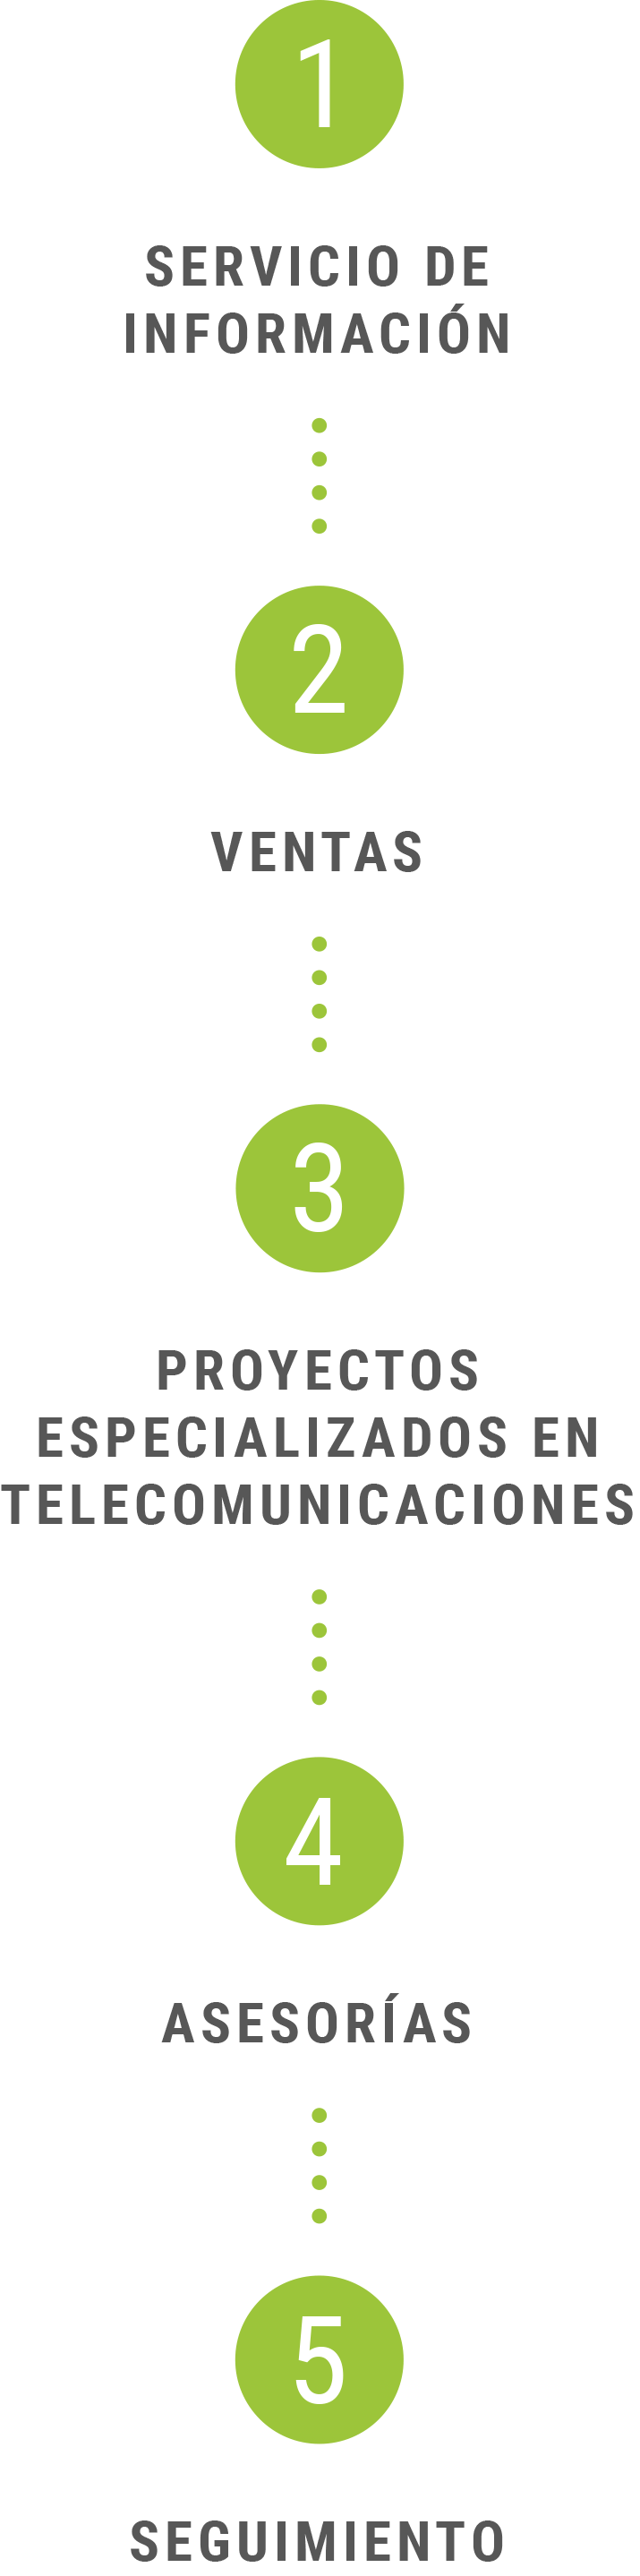 Servicio de Información, Ventas, Proyectos especializados en telecomunicaciones, asesorías, seguimiento.